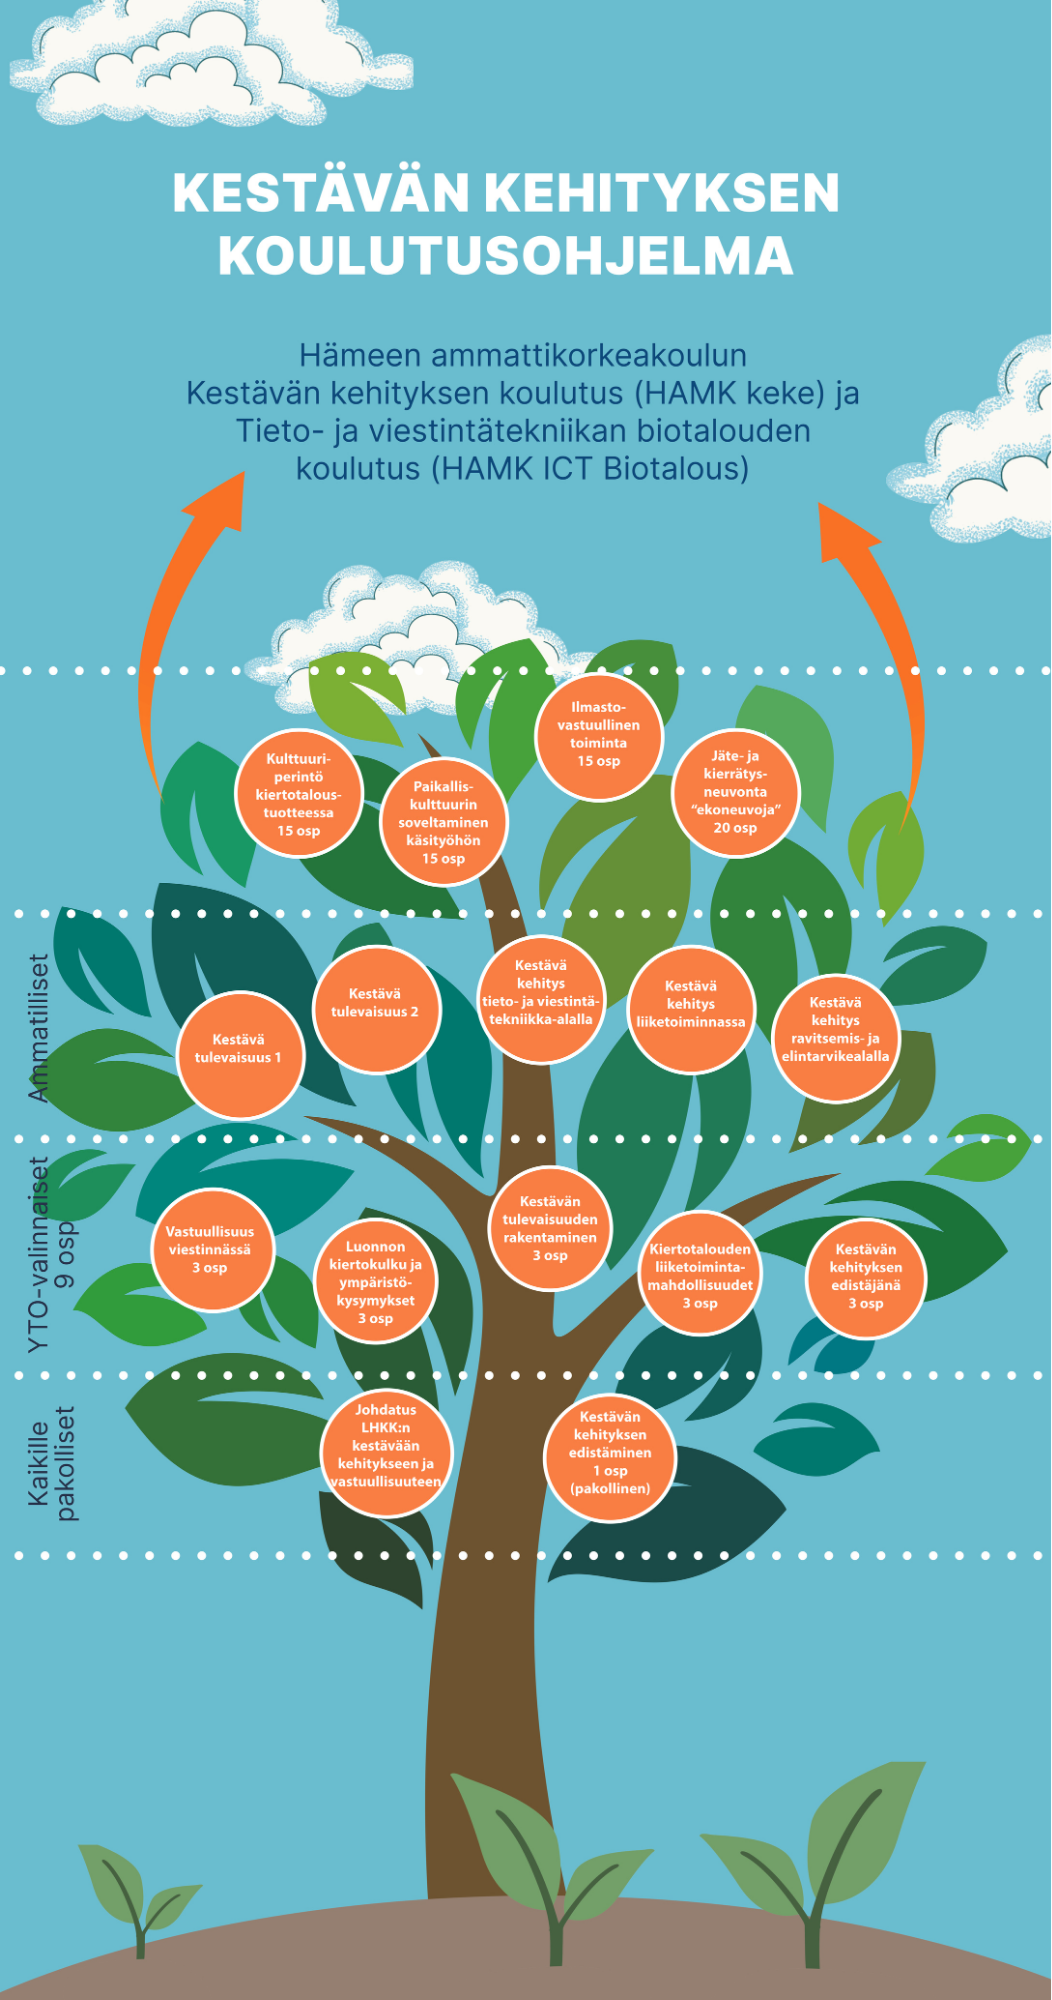 kestävän kehityksen koulutusohjelma esitetty puun muodossa, jossa puun hedelmät ovat opintomoduuleita